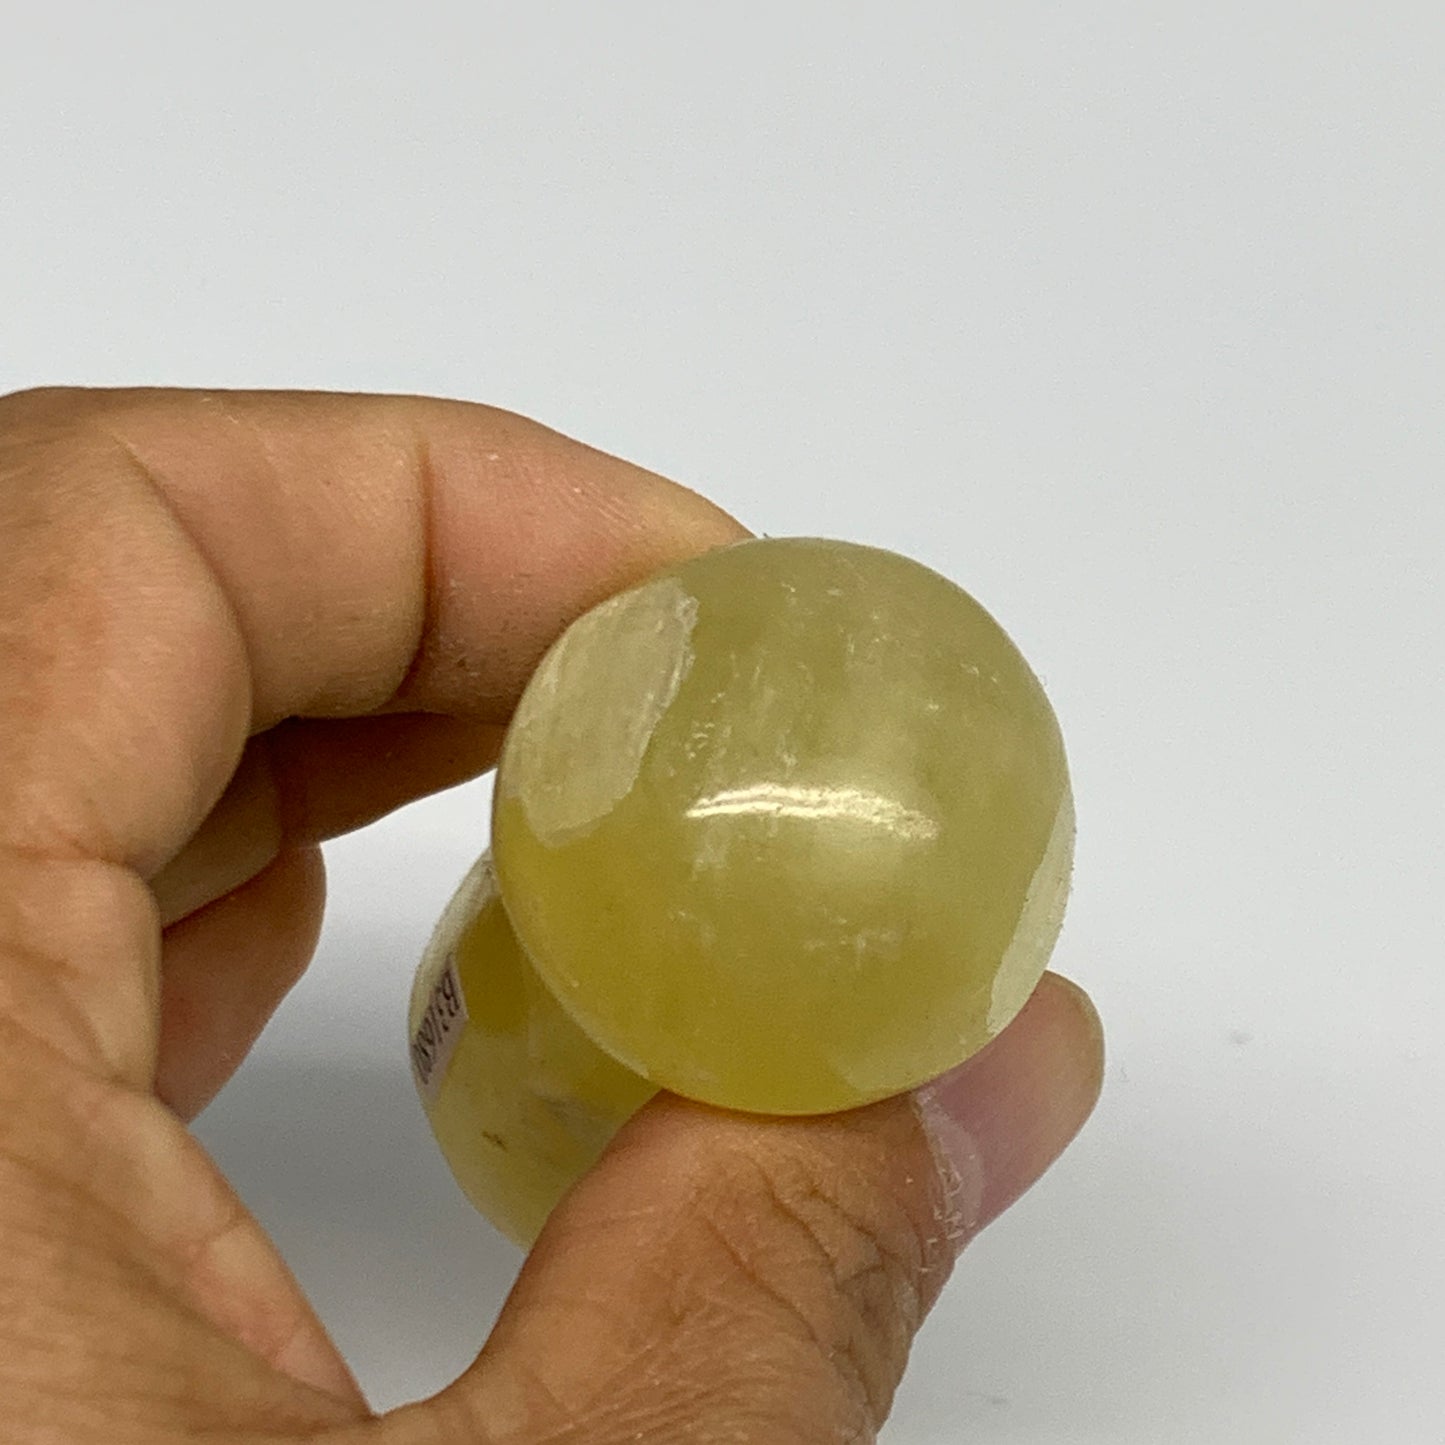 93.9g, 2.4"x1.2" Natural Lemon Calcite Mushroom Gemstone @Pakistan, B31680